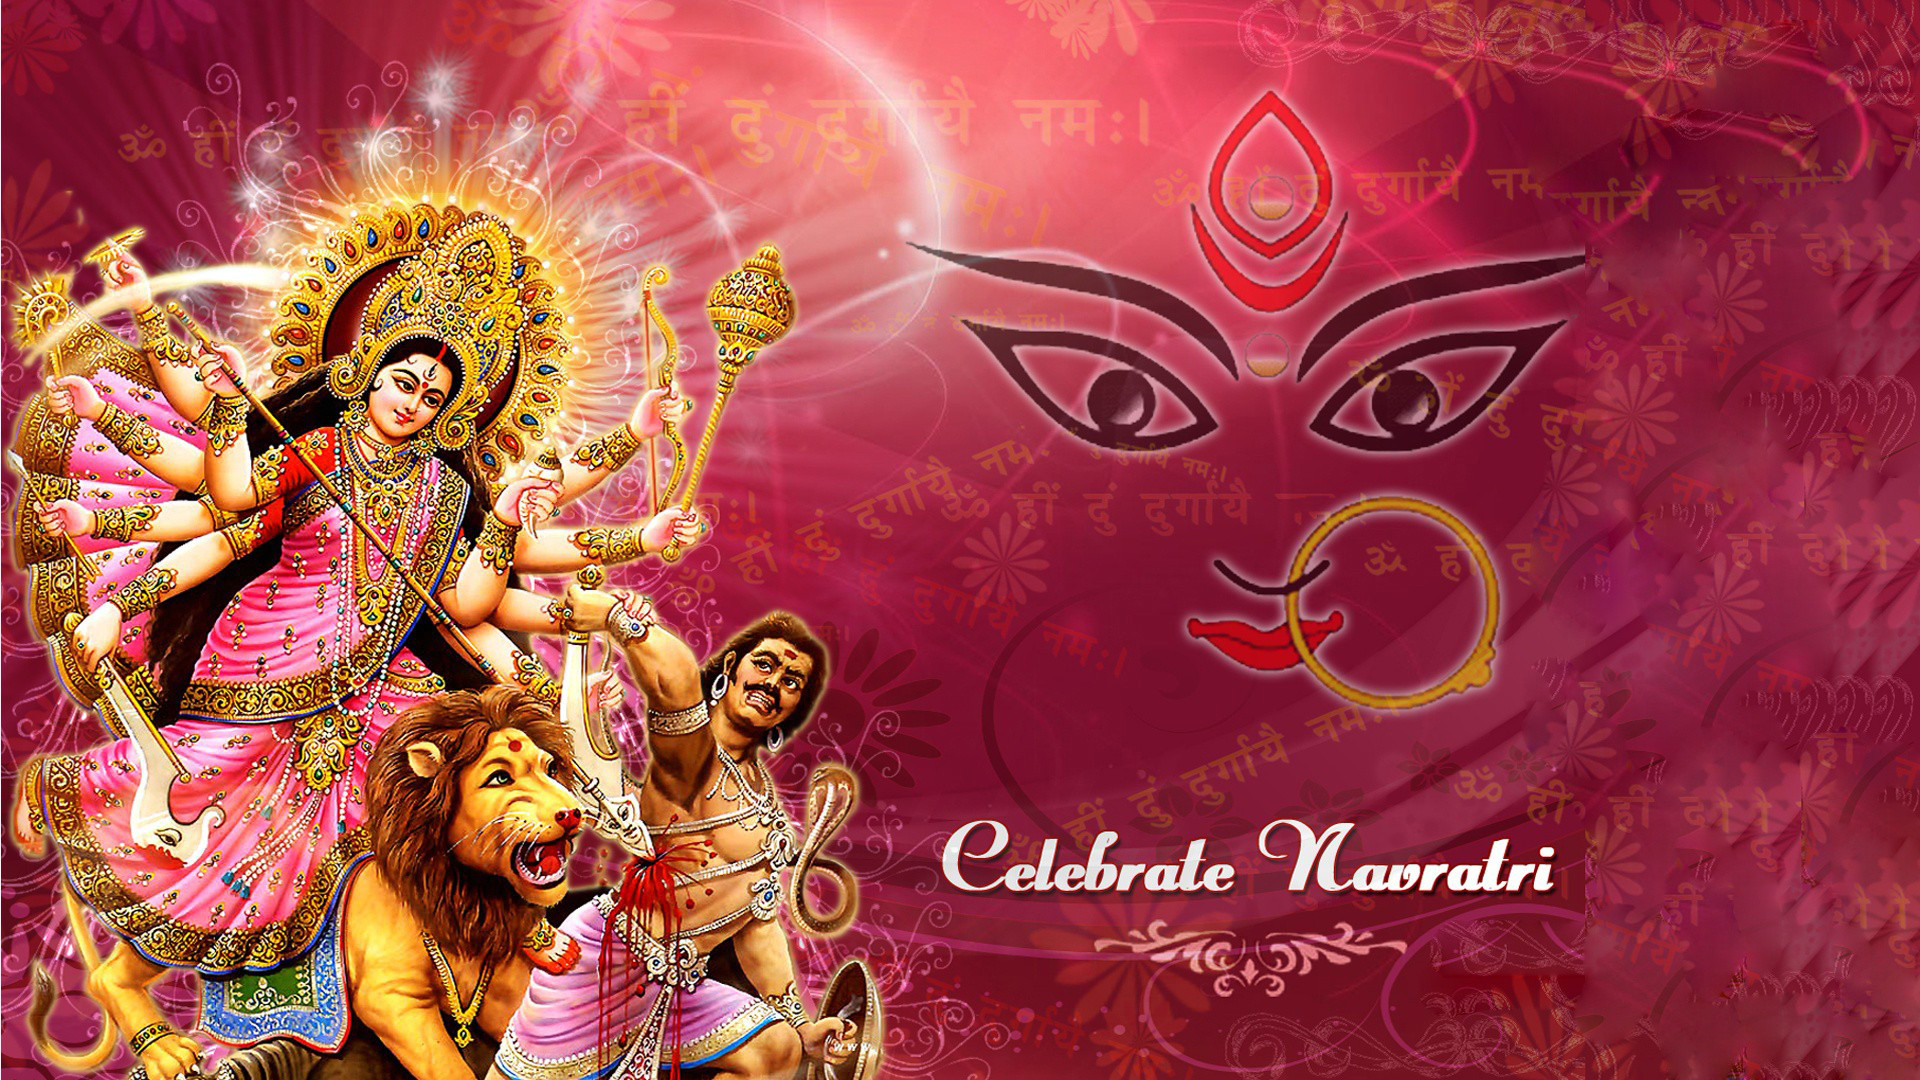 1920x1080 Navratri Maa Durga HD Images Wallpapers Free Download